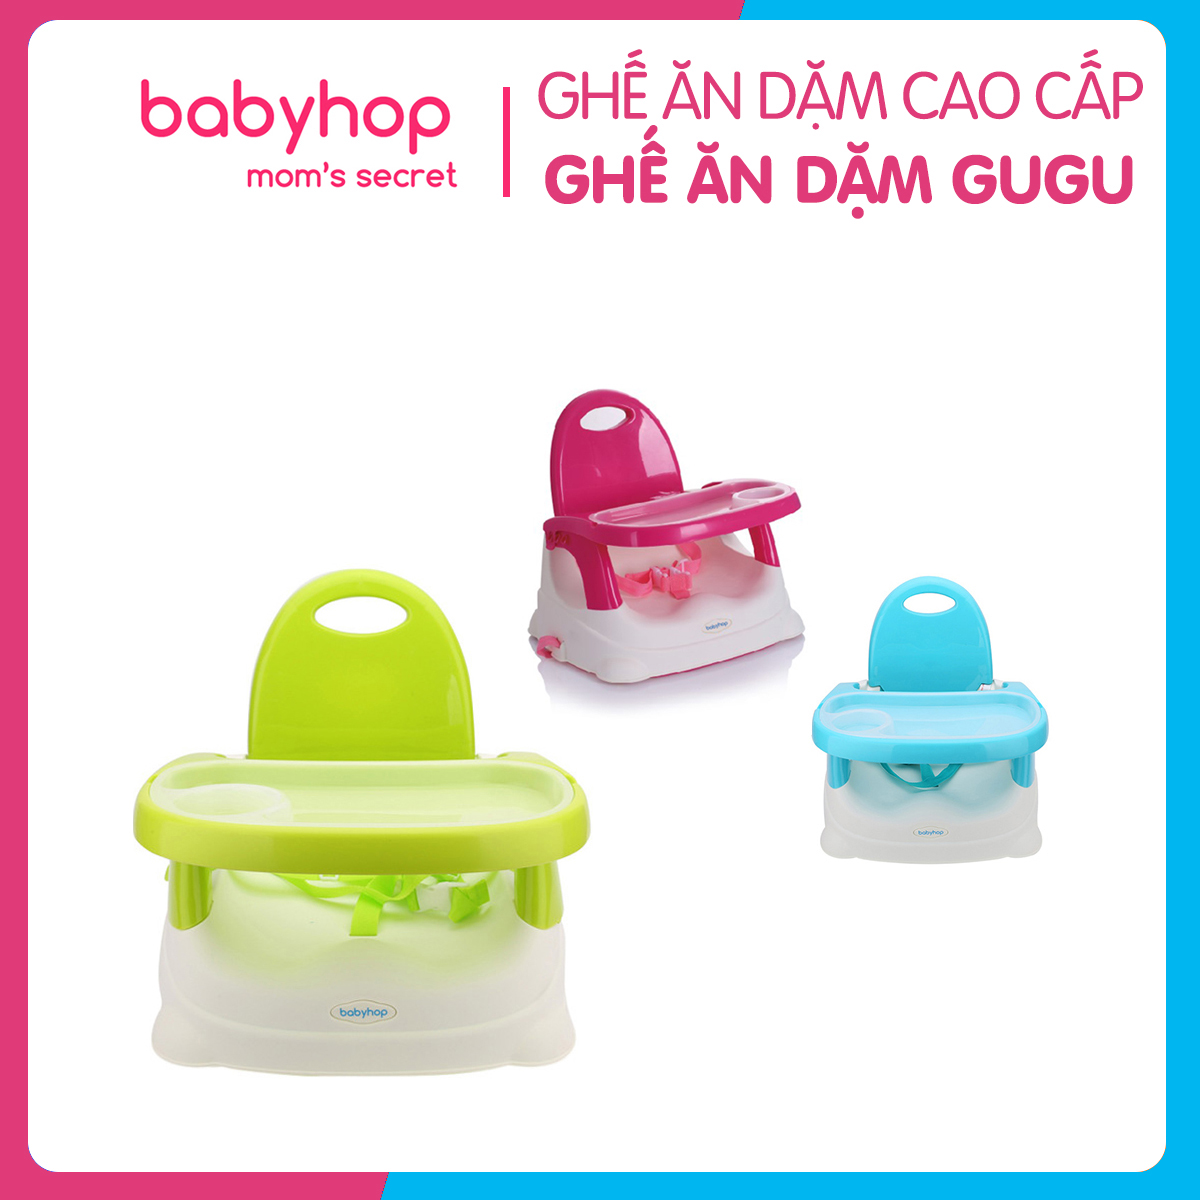 Ghế ăn dặm gugu Babyhop cho bé 3 nấc điều chỉnh kèm đai an toàn, thiết kế chắc chắn có thể gấp gọn, được làm từ nhựa nguyên sinh an toàn cho sức khỏe của bé - Hàng chính hãng